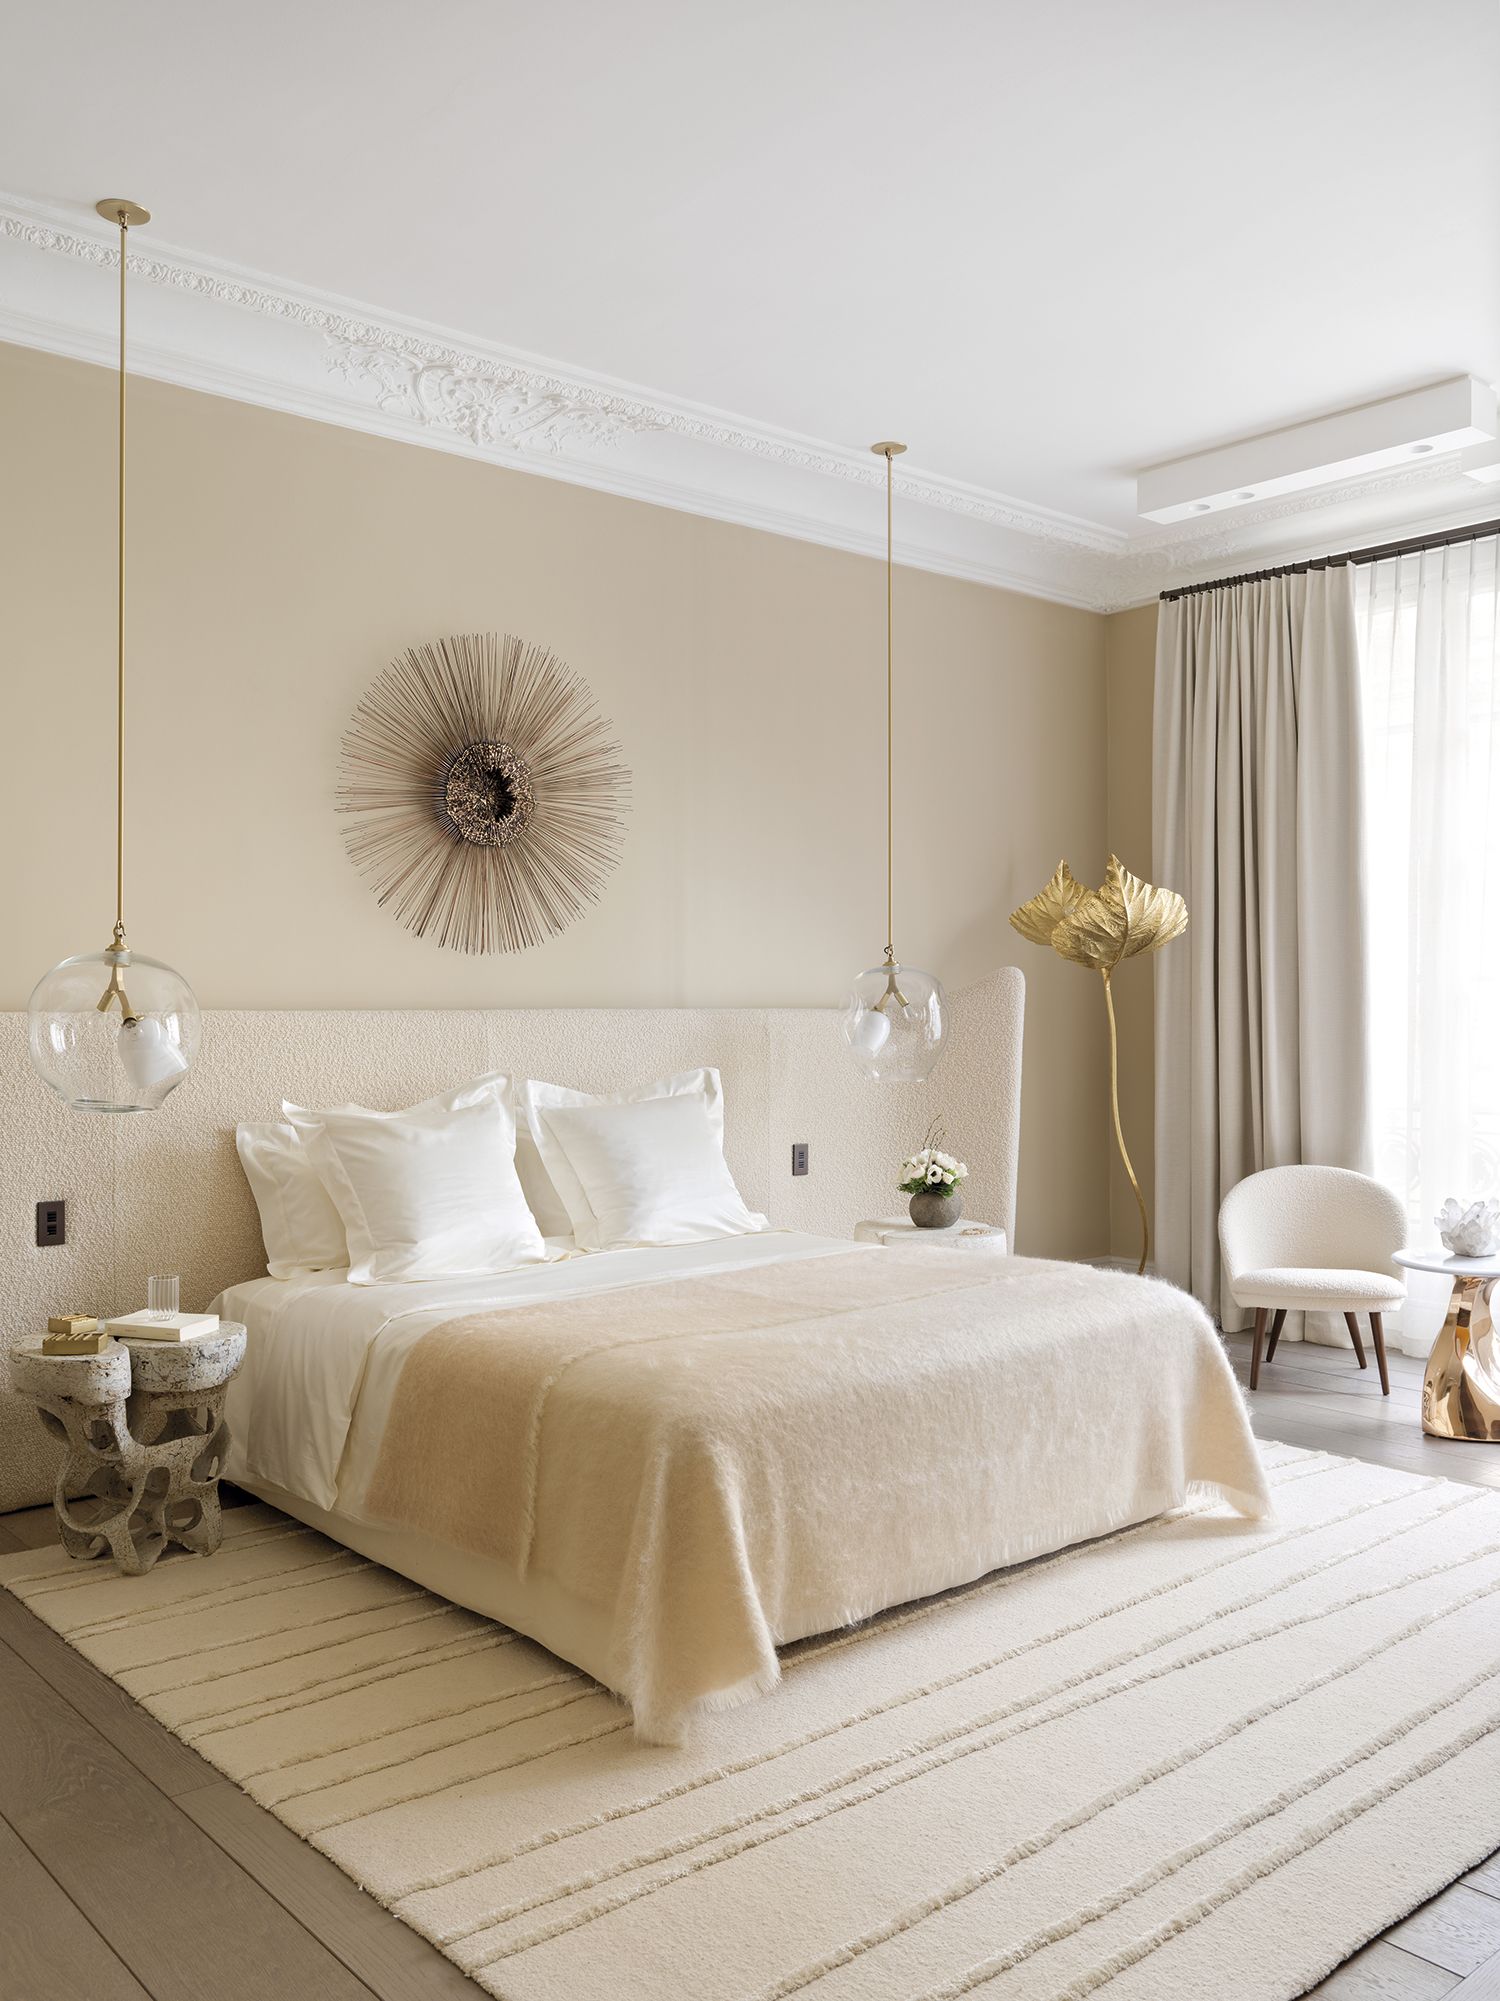 golondrina Sensible parque Natural 15 dormitorios decorados en blanco muy elegantes y luminosos